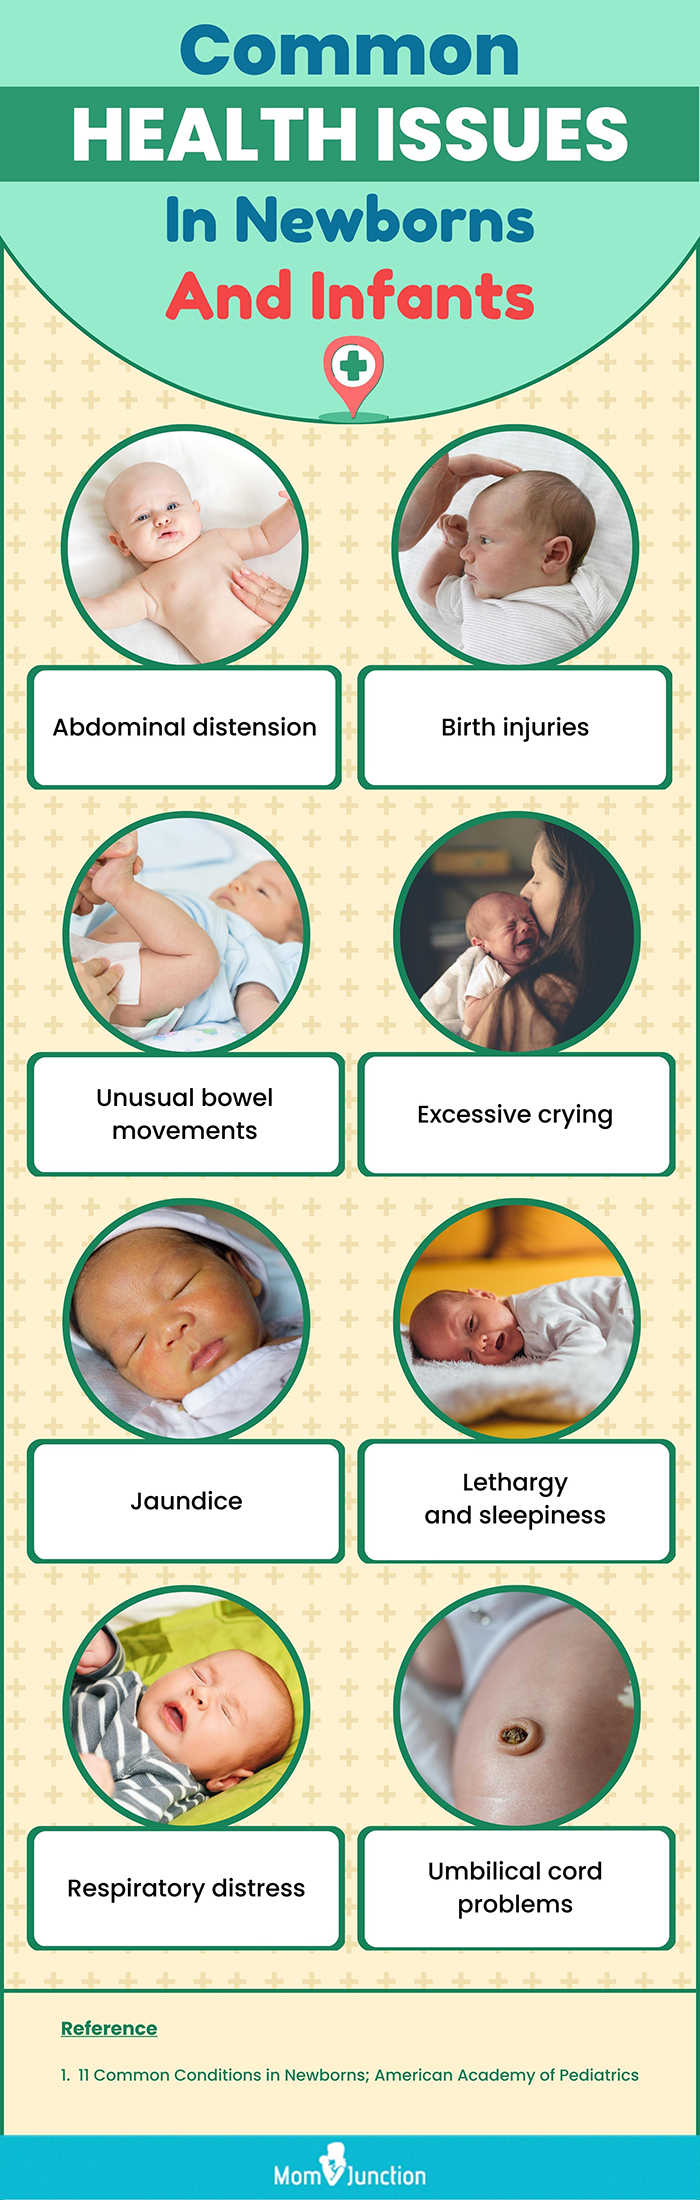 新生儿和婴儿的常见健康问题(信息图)